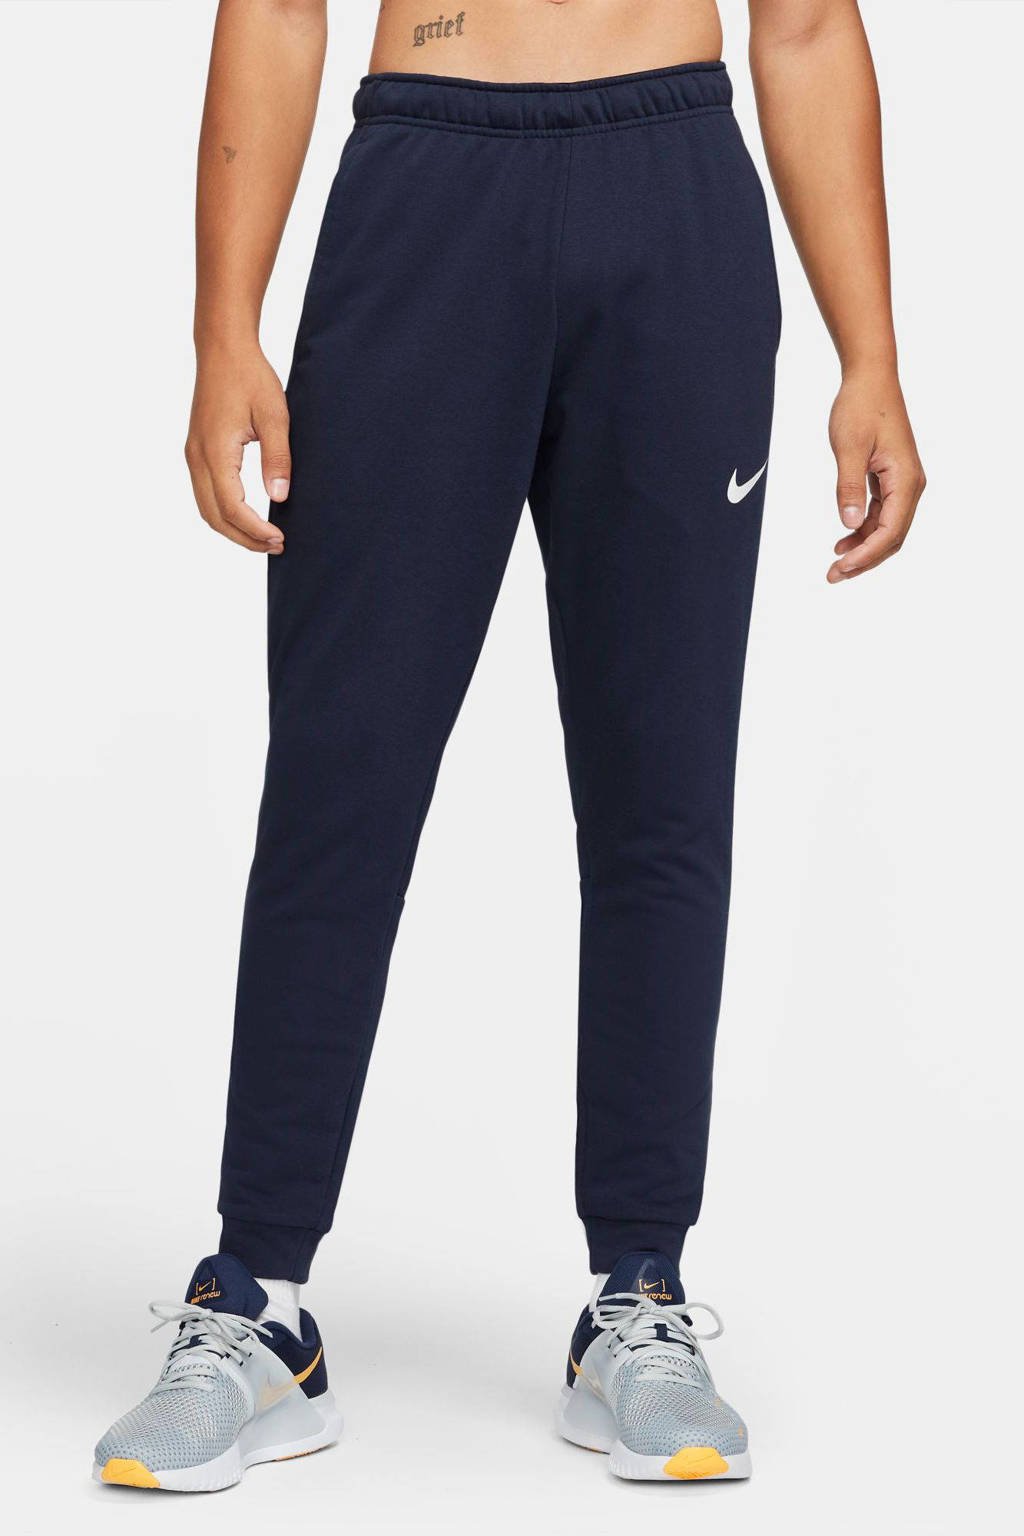 Donkerblauwe heren Nike joggingbroek van katoen met regular fit, elastische tailleband met koord en logo dessin